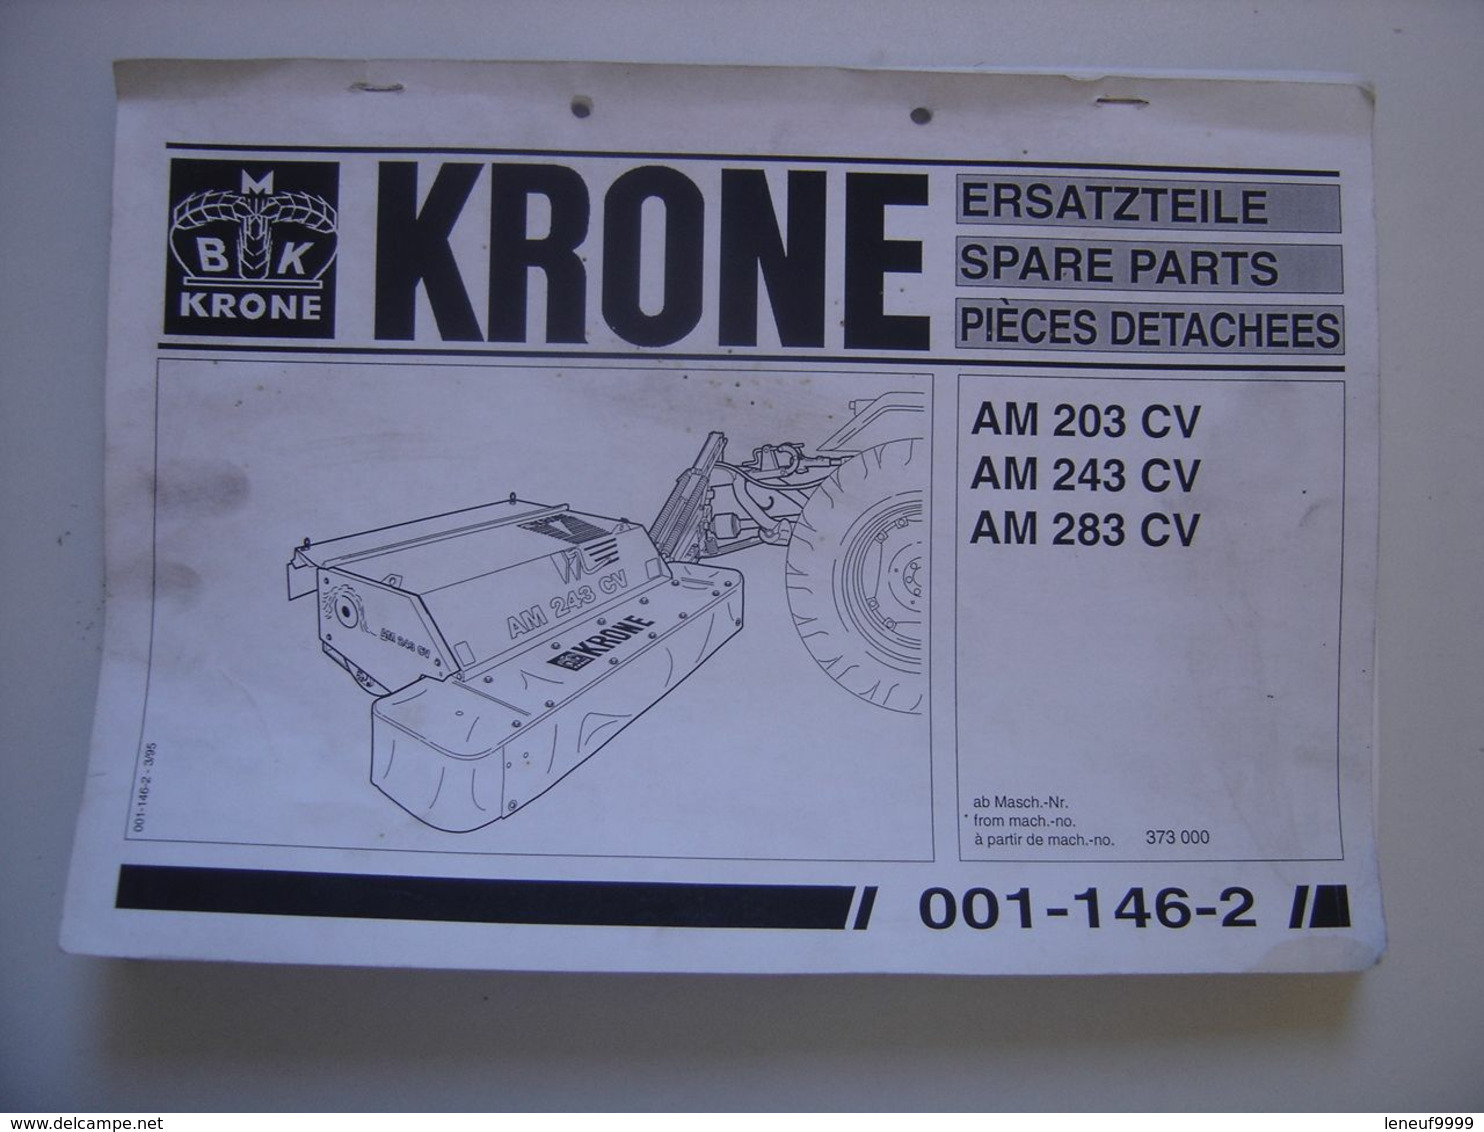 Manuel KRONE Materiel Agricole AM 203 CV Ersatzteile Spare Parts Pieces Detachee - Tractors